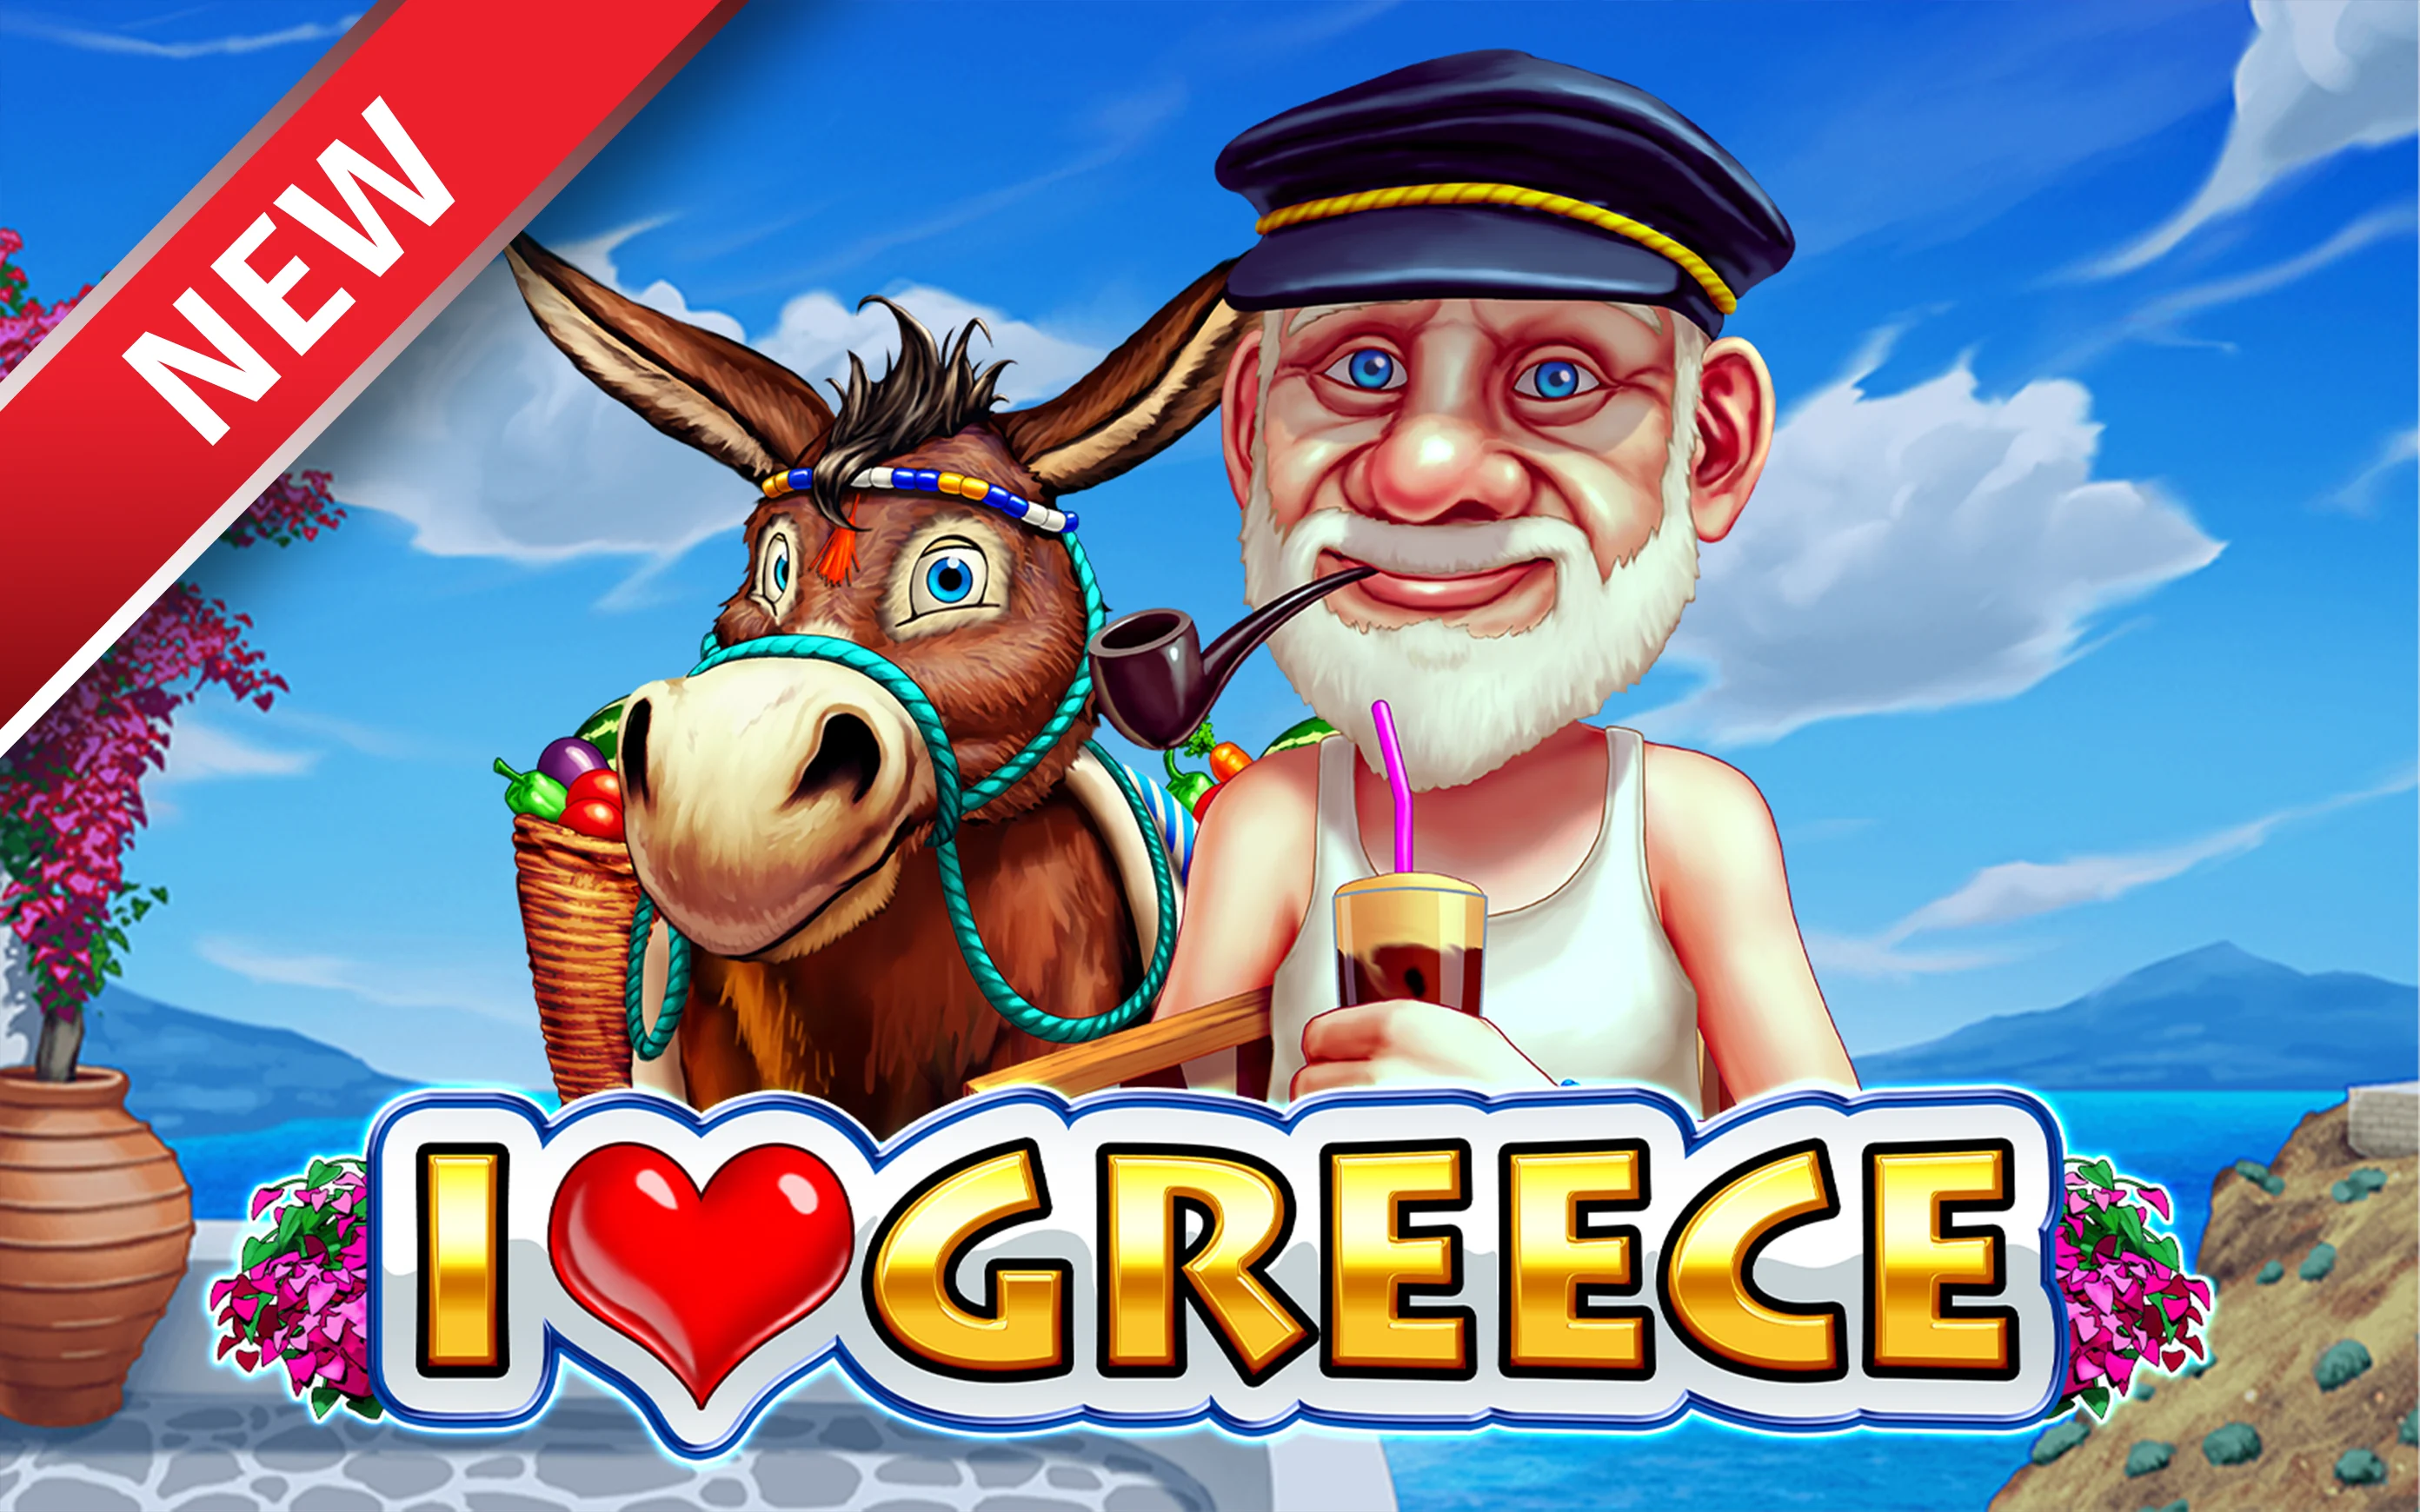 Играйте в I Love Greece в онлайн-казино Starcasino.be